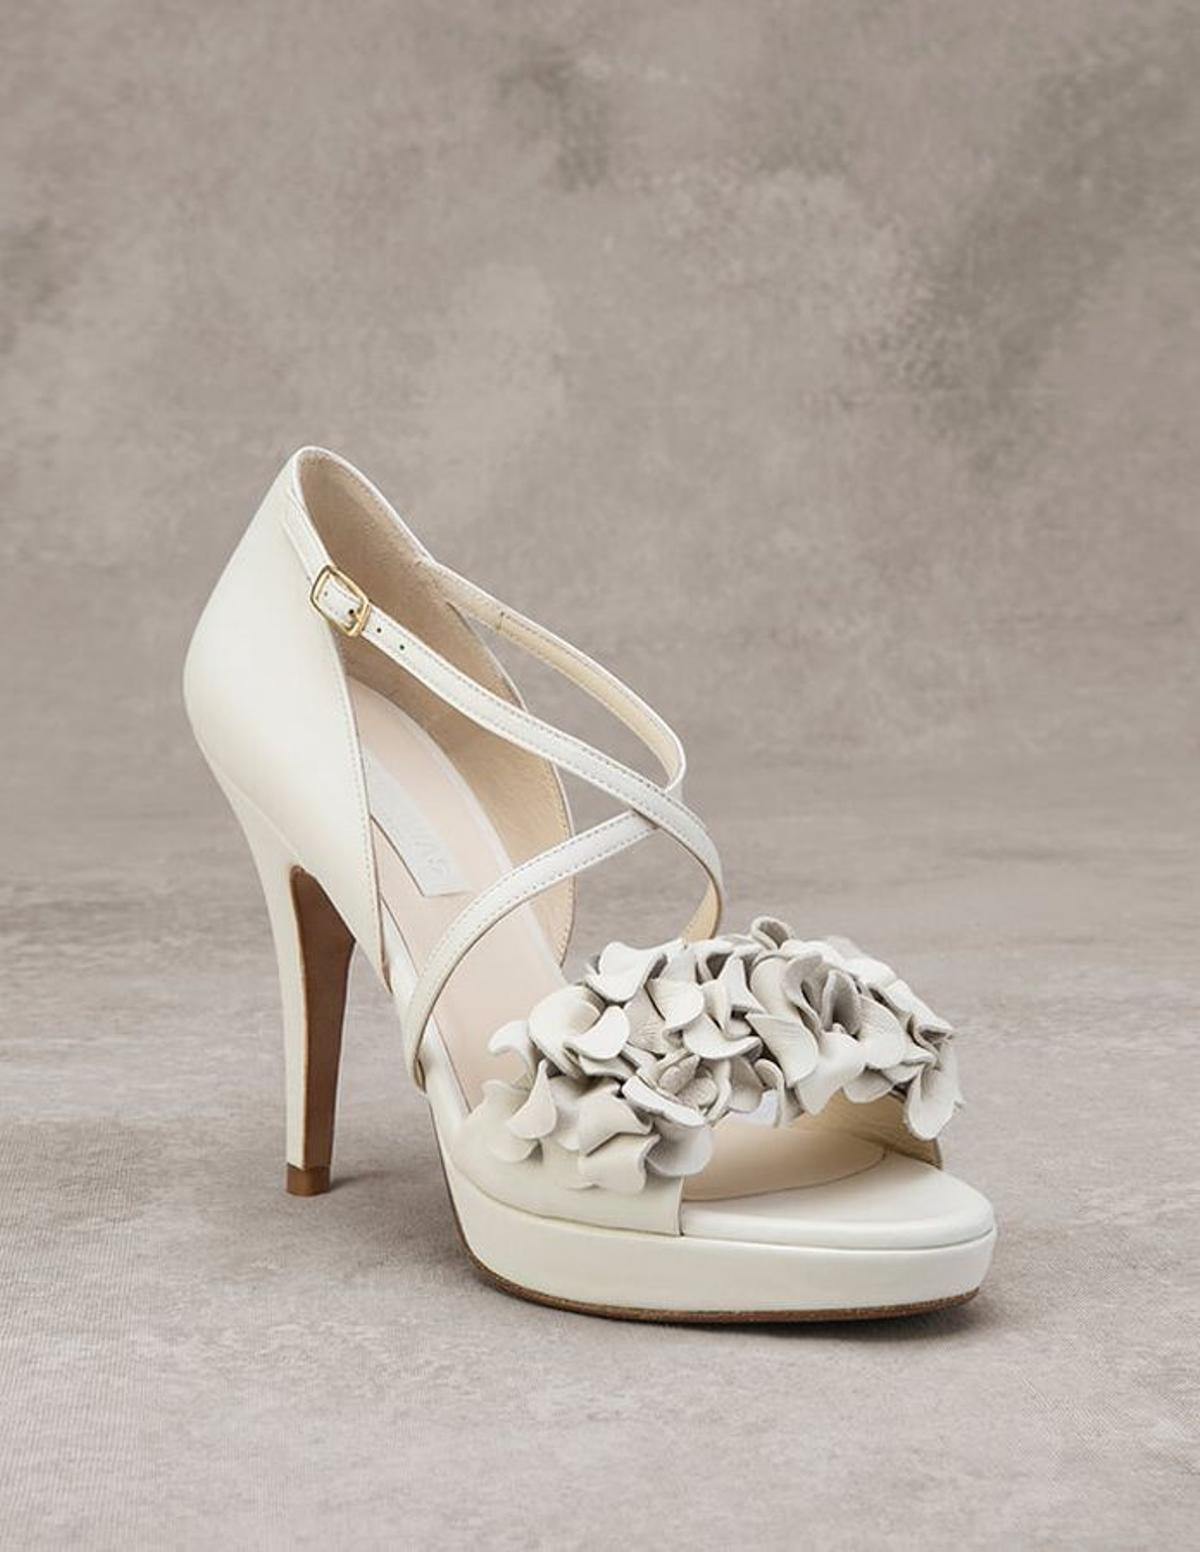 Tendencias en zapatos de novia: con tiras en el empeine para un look clásico pero alejado del tradicional zapato de novia